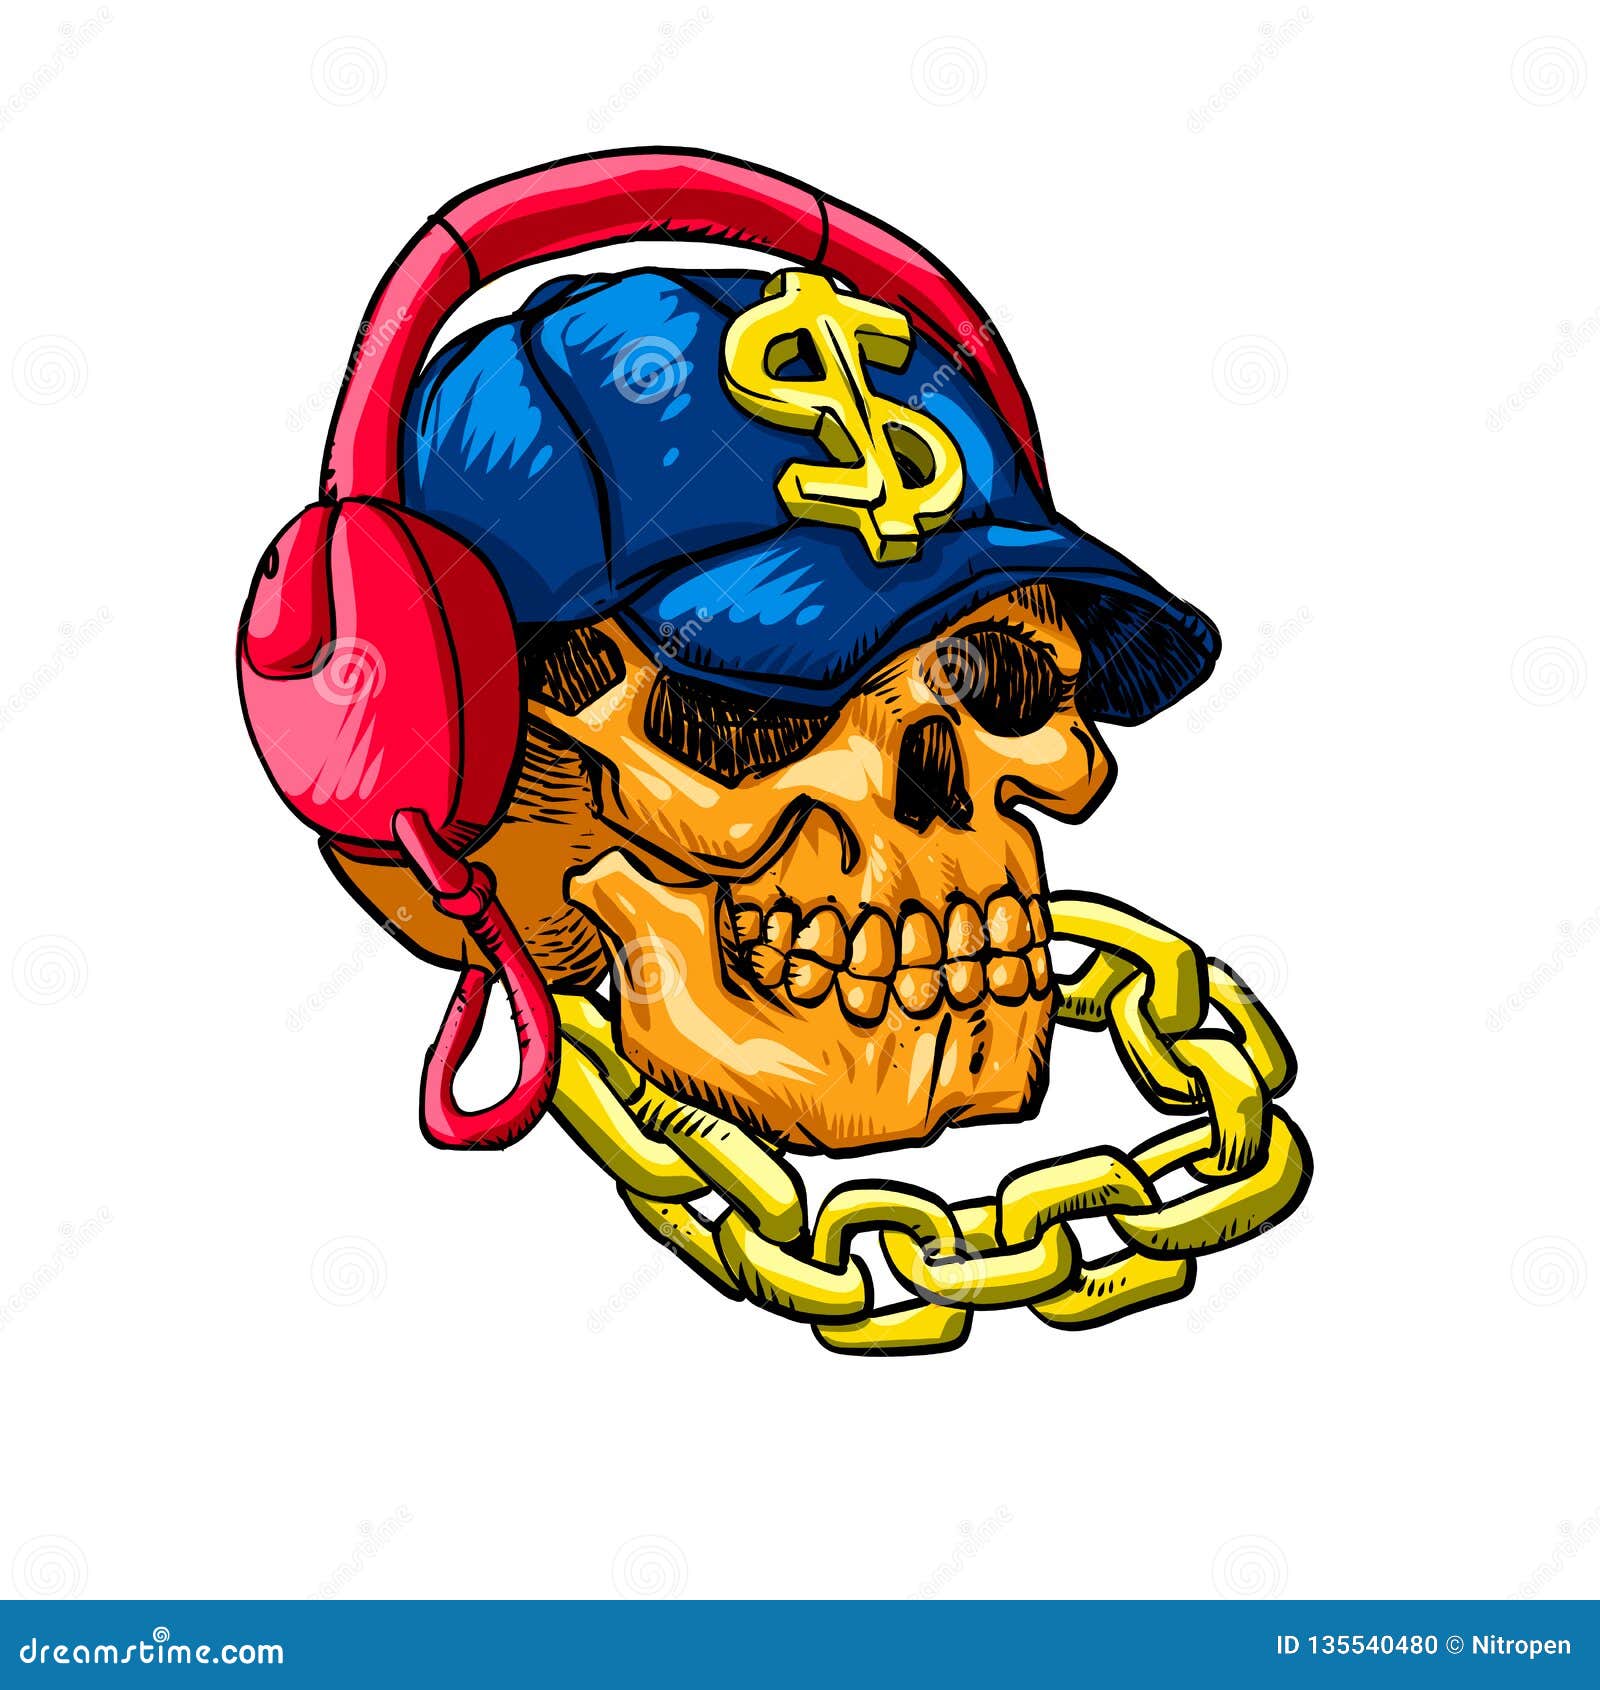 Cartoon gangster skull stock illustration. Illustration of gang - 135540480